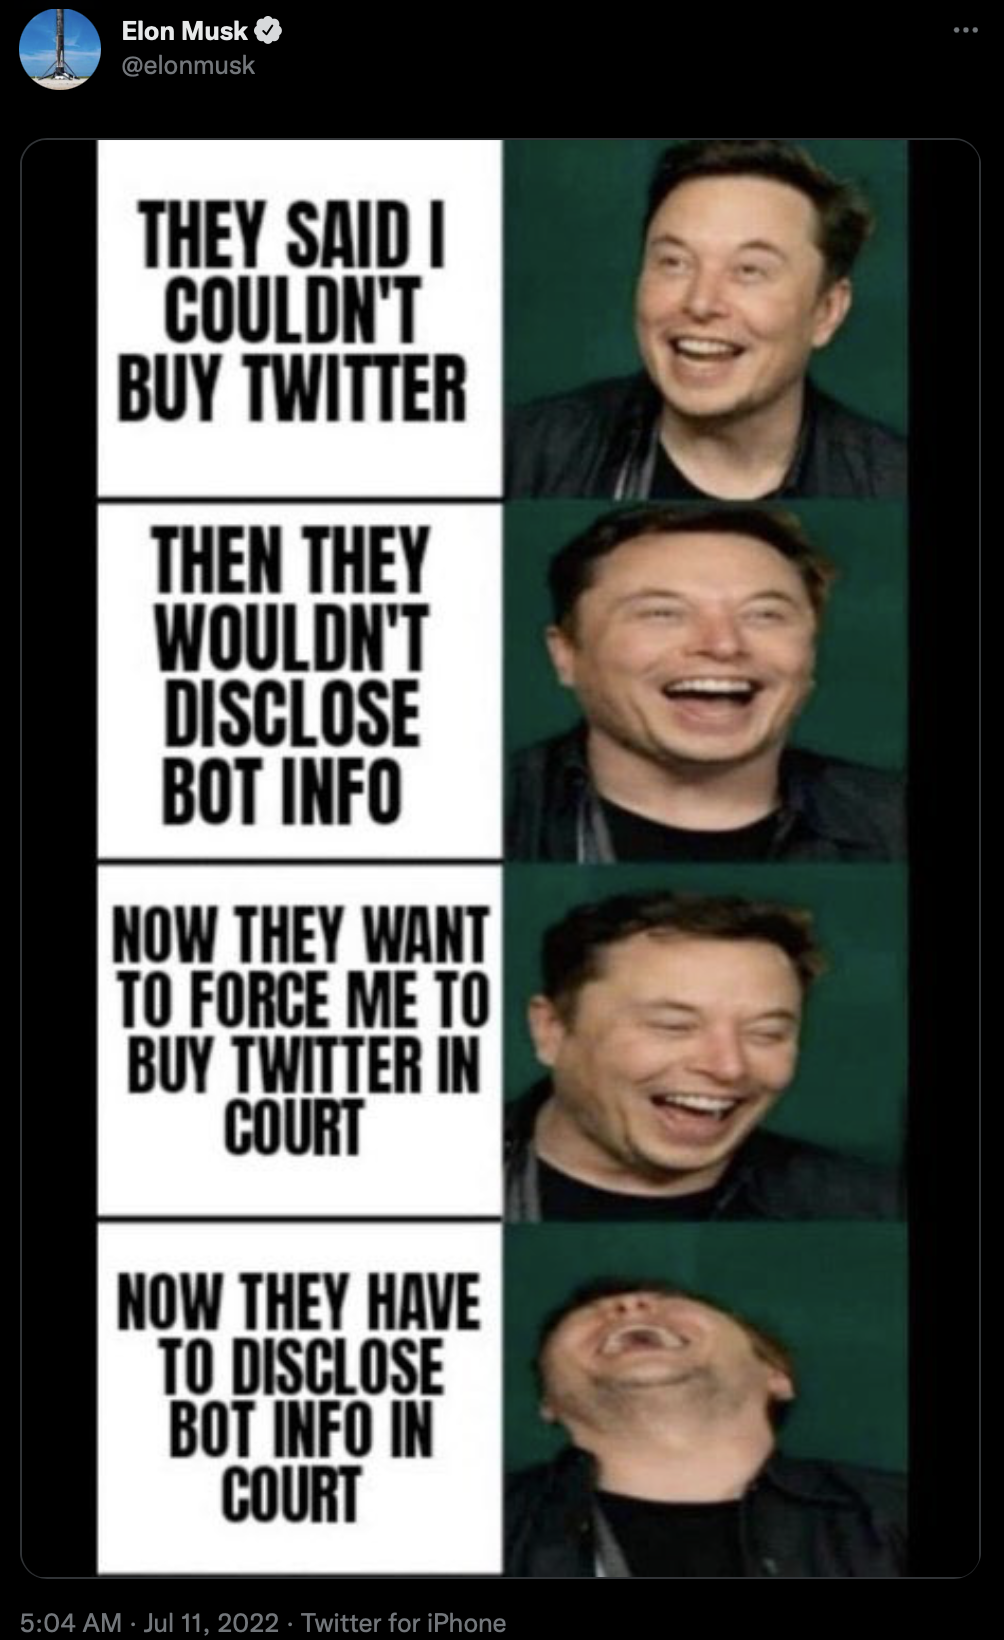 Elon Musk comparte un meme en el que se burla de Twitter, a pesar de las afirmaciones de que podría verse obligado a finalizar la compra